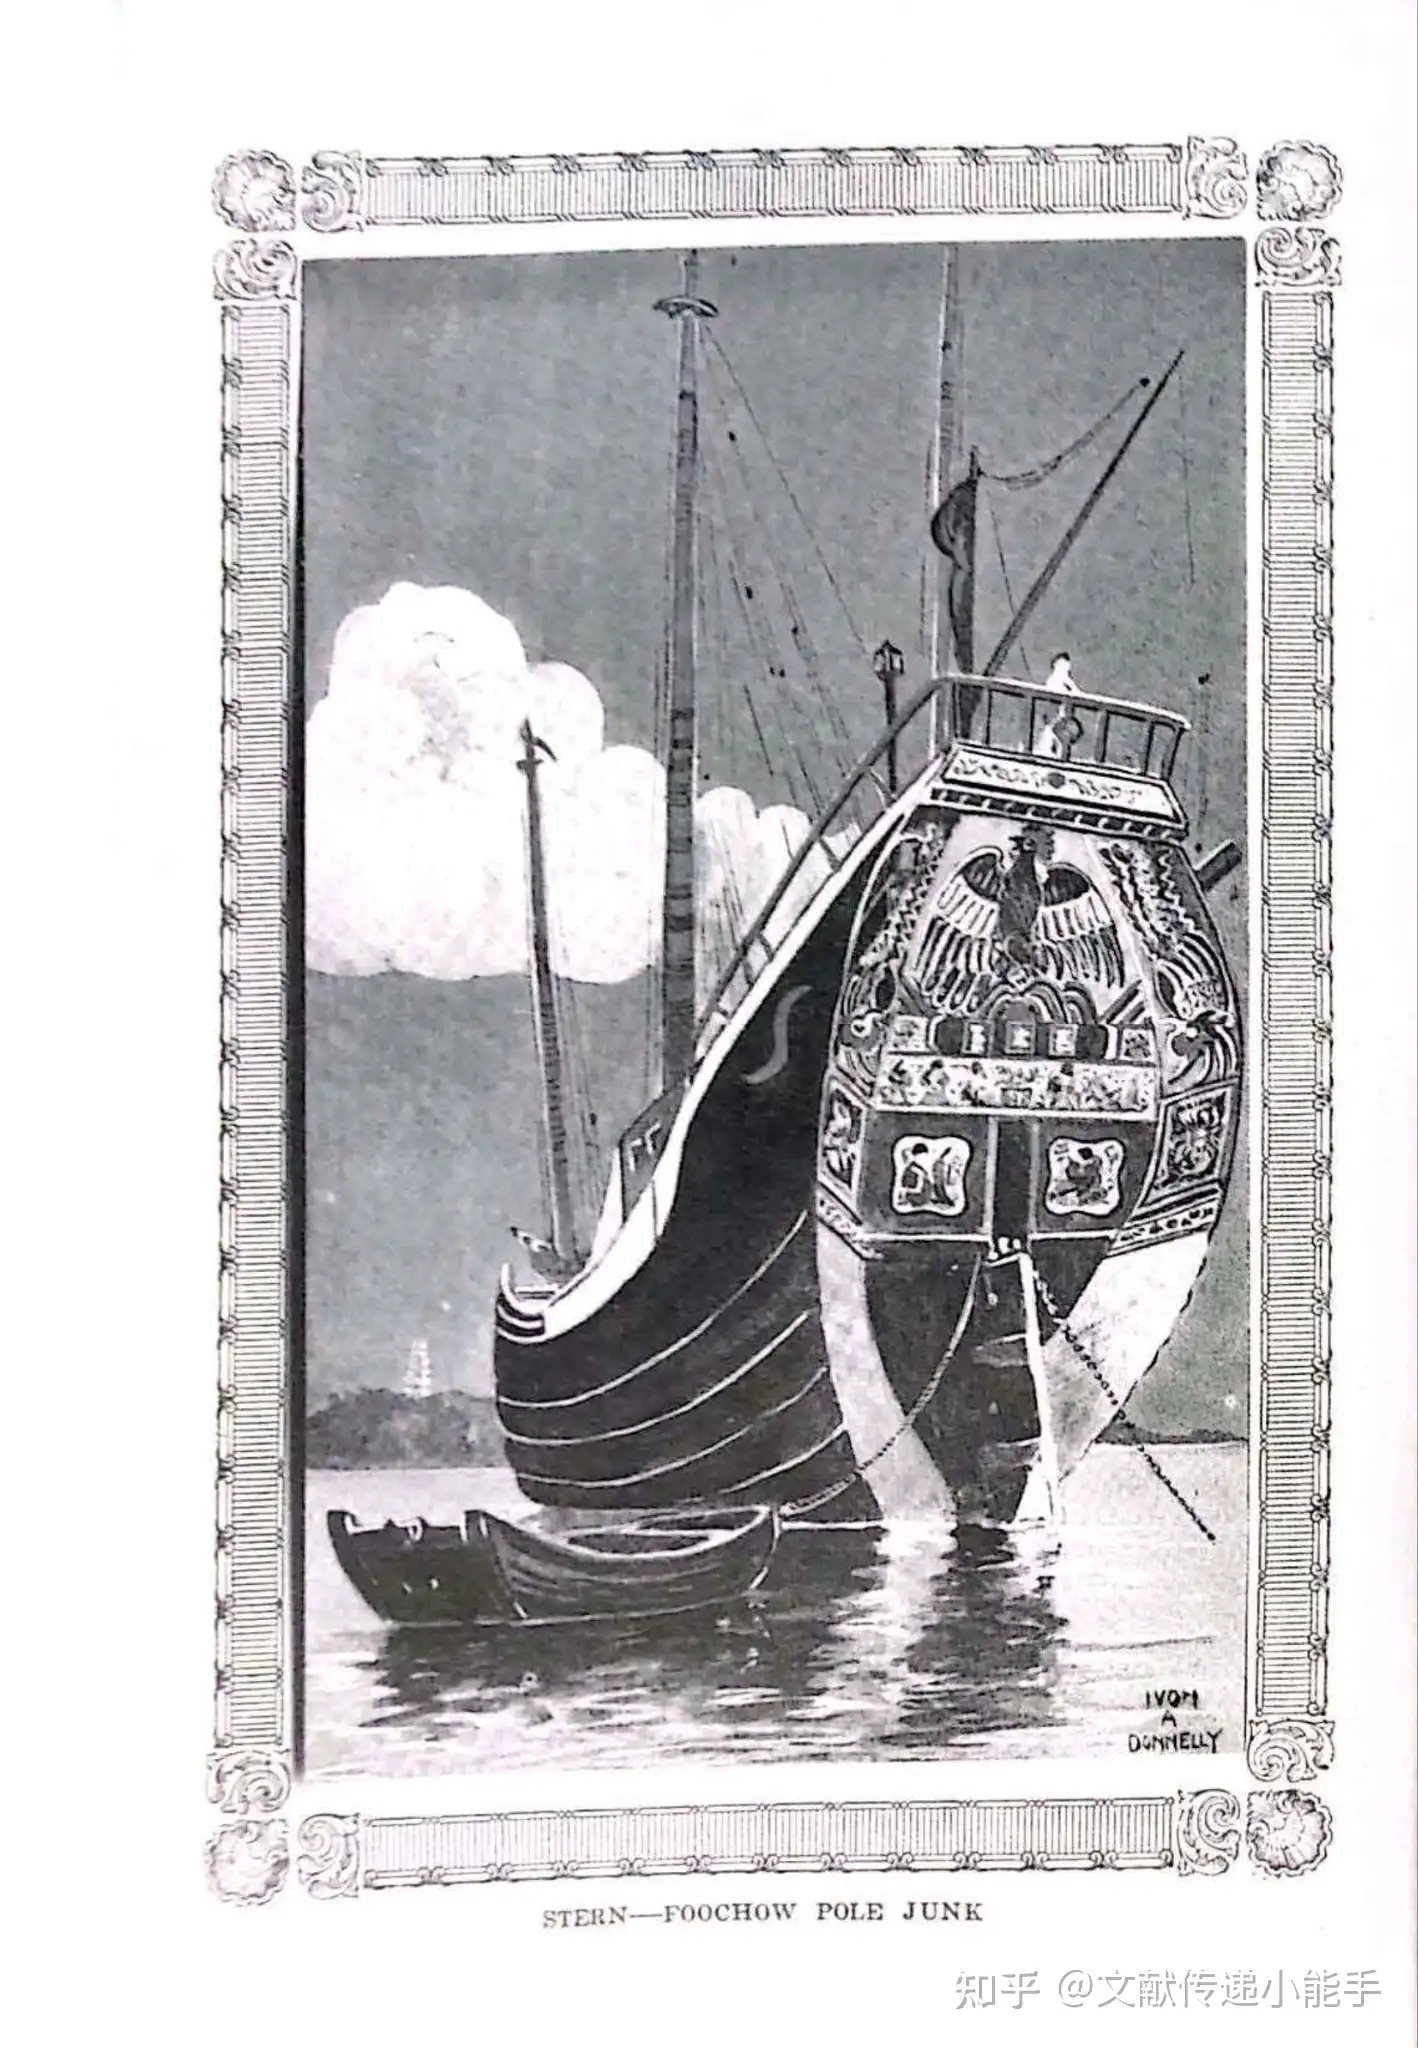 唐纳利,中式帆船与各地方船型,英文版,Chinese Junks and Other Native